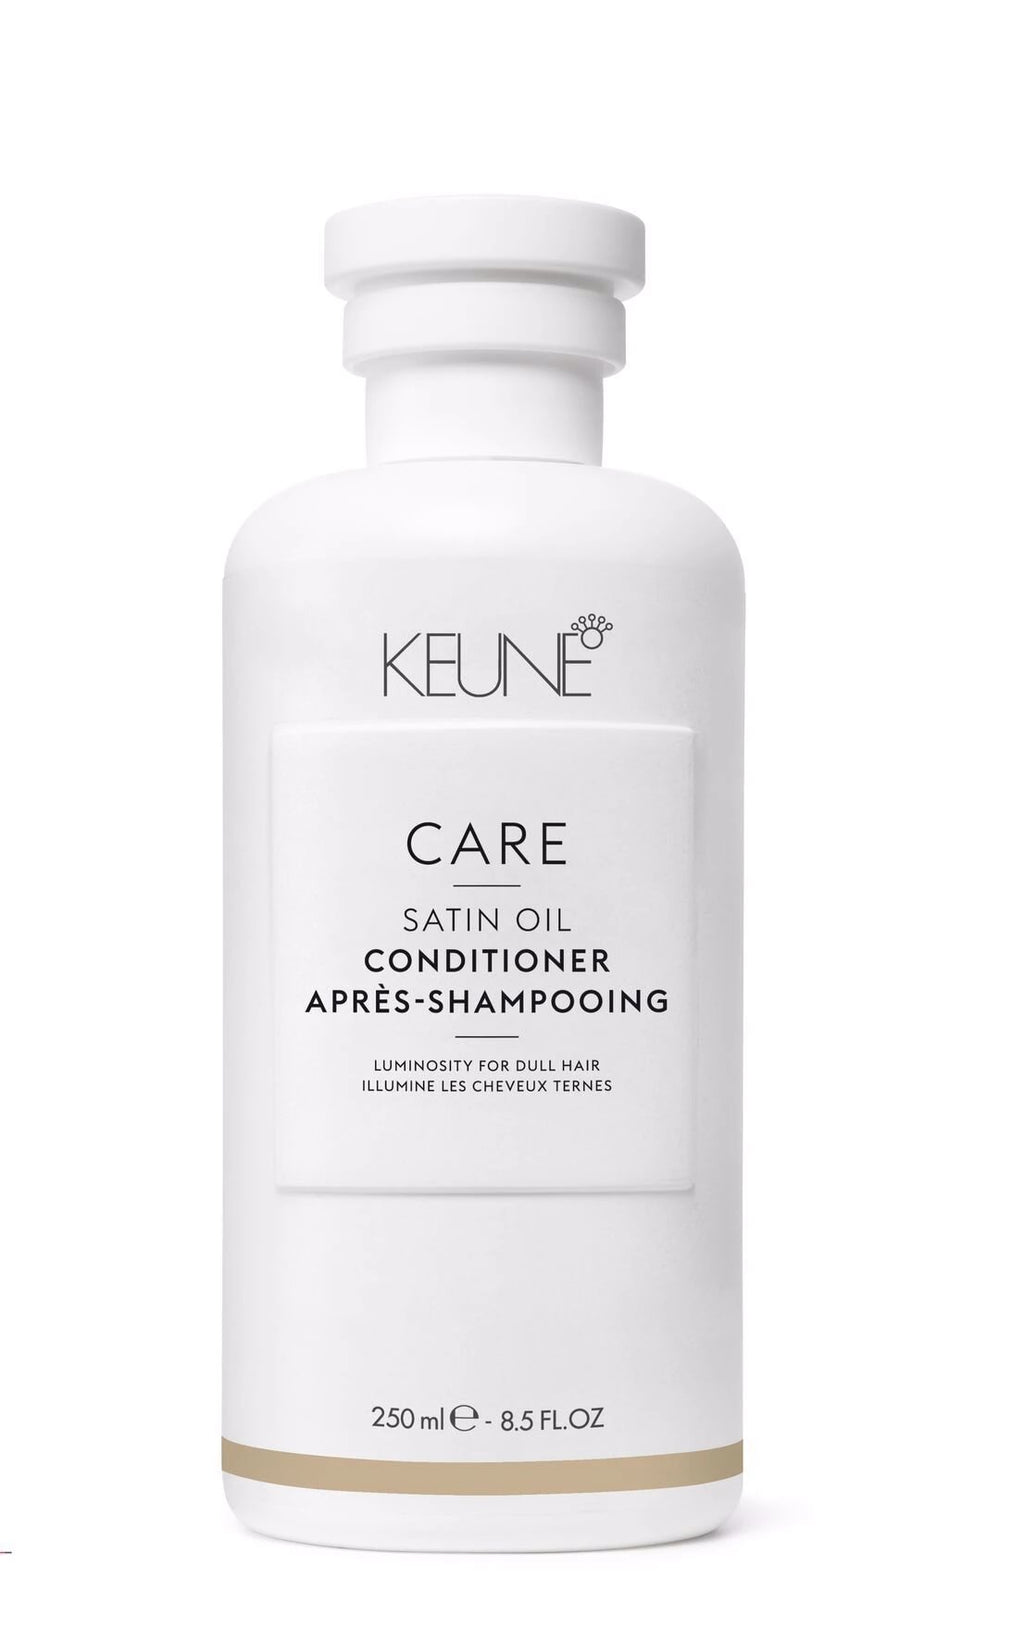 Keune Care Satin Oil conditioner, 250ml